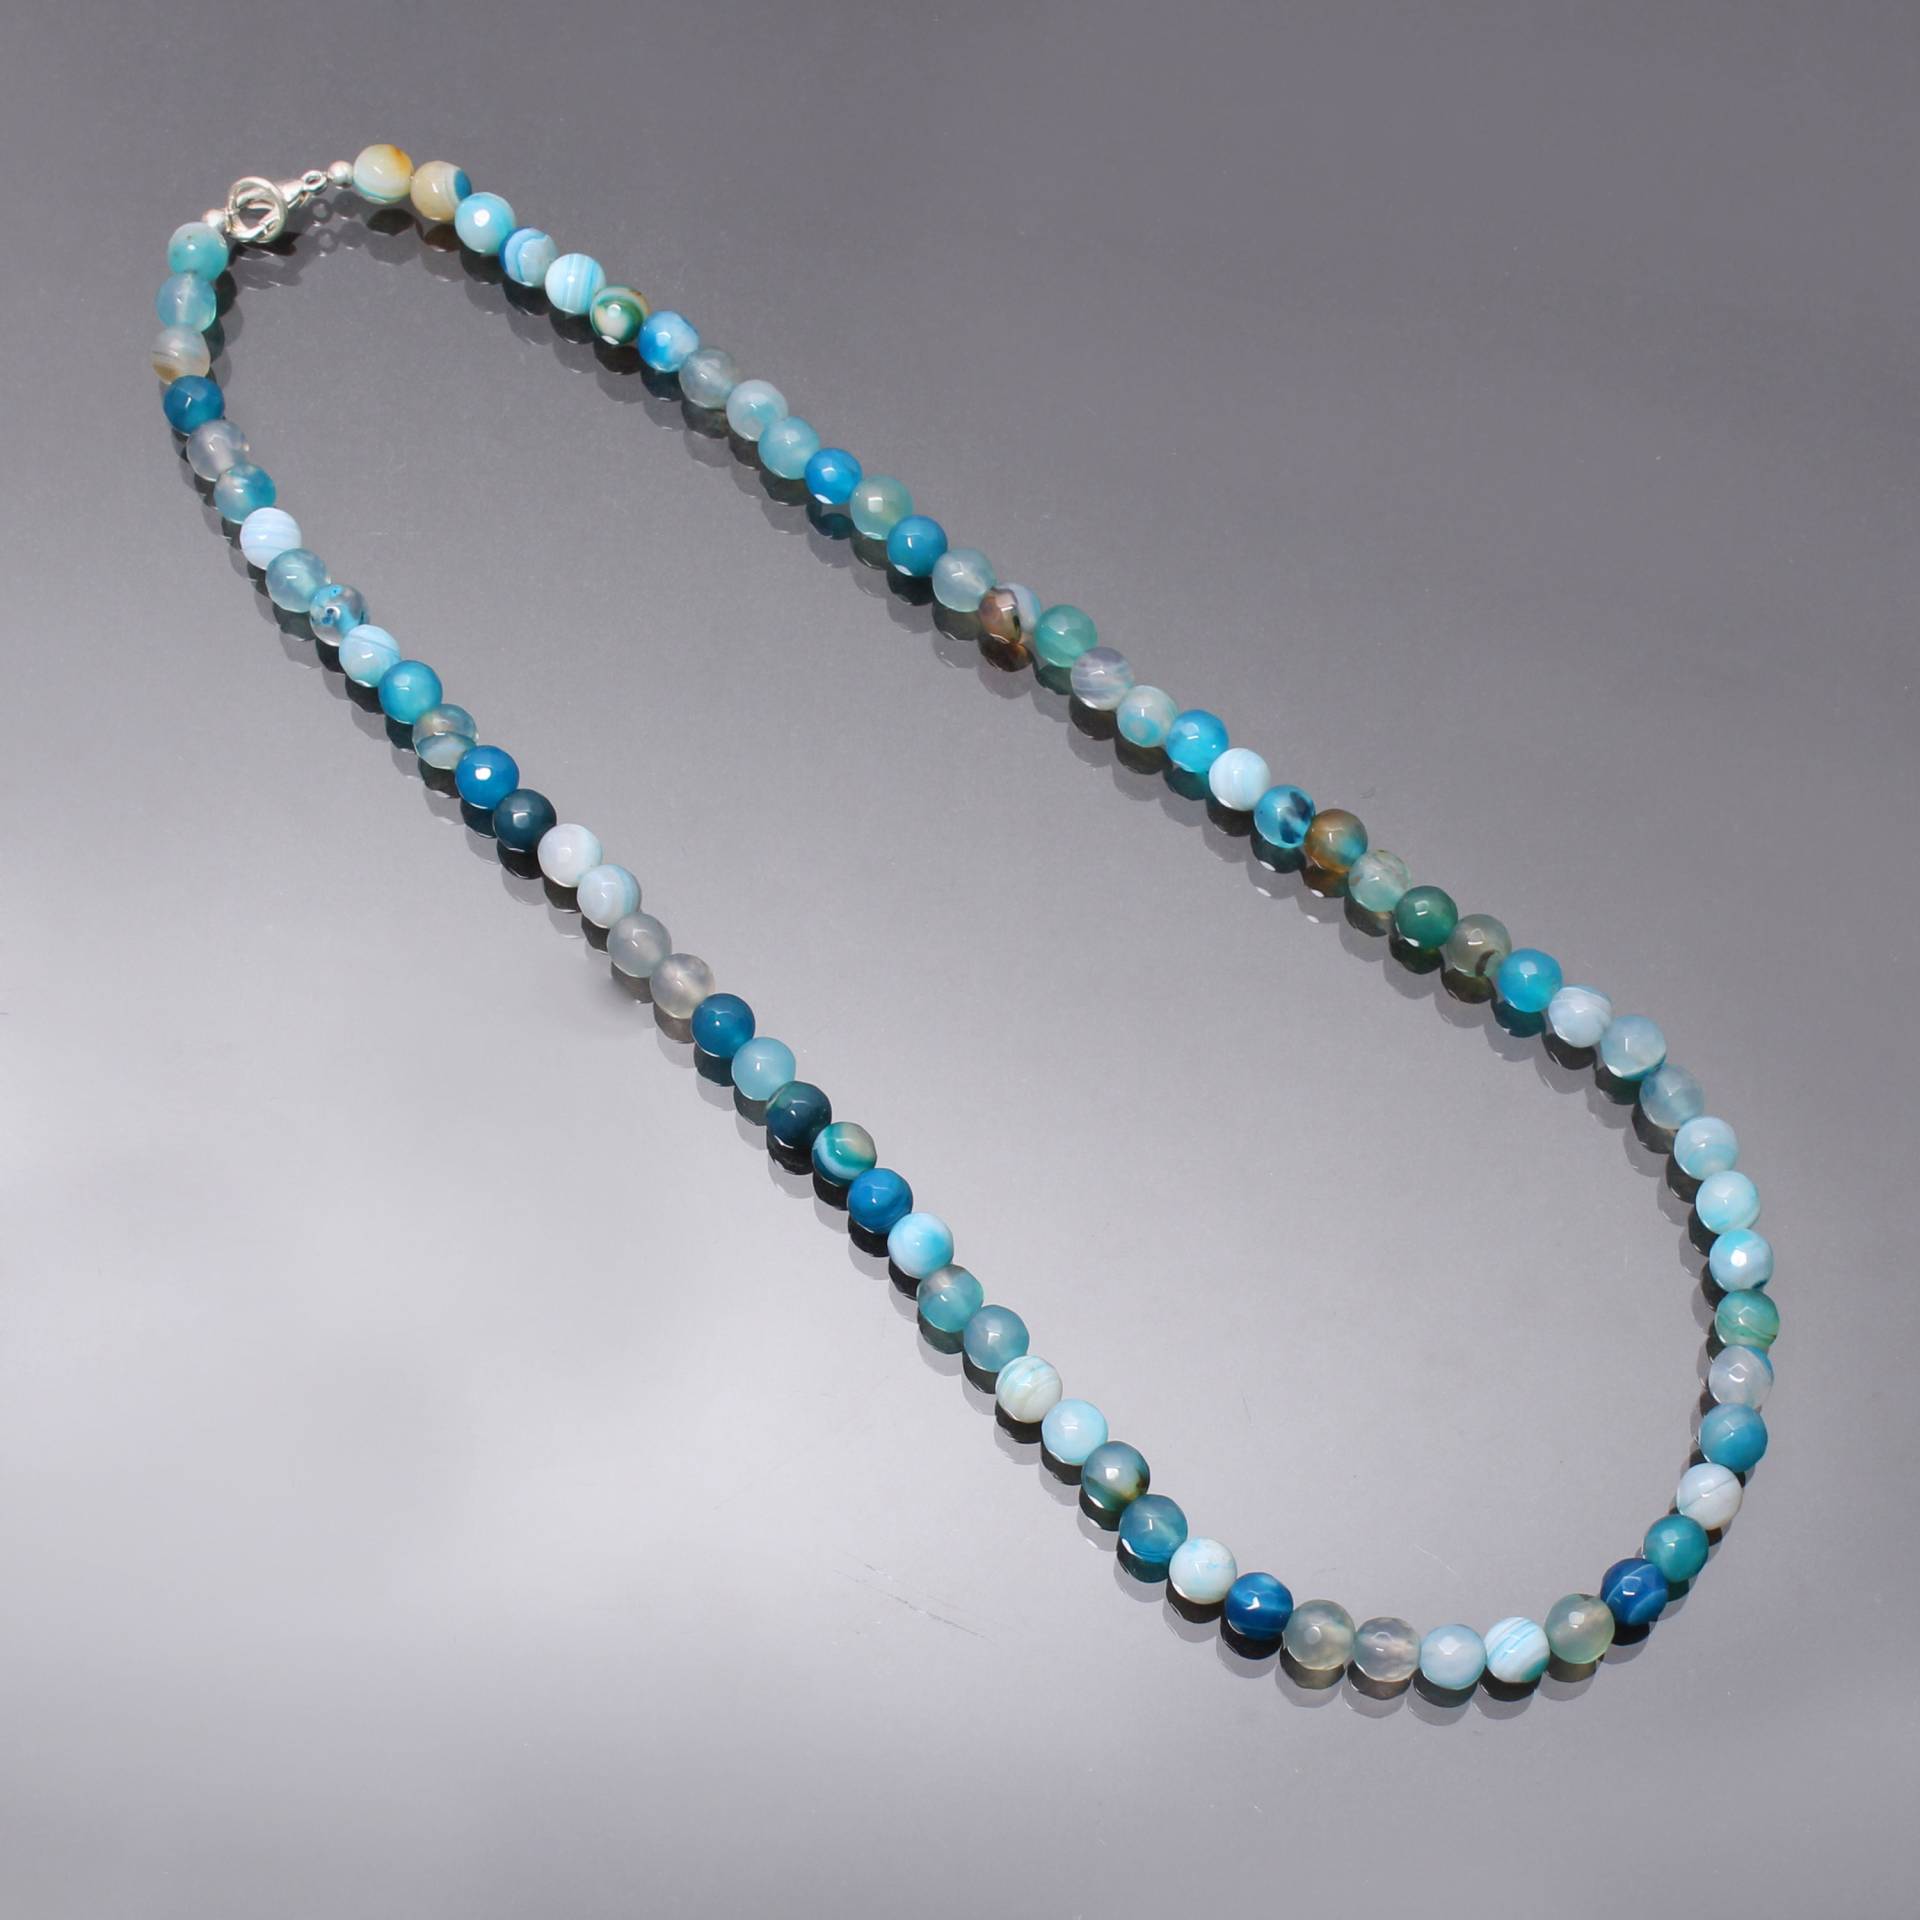 Natürliche Blaue Achat Perlen Halskette, 6mm Blau Gestreifte Facettierte Runde Silber Frauen Geschenk Für Sie von DelightGemsCreations